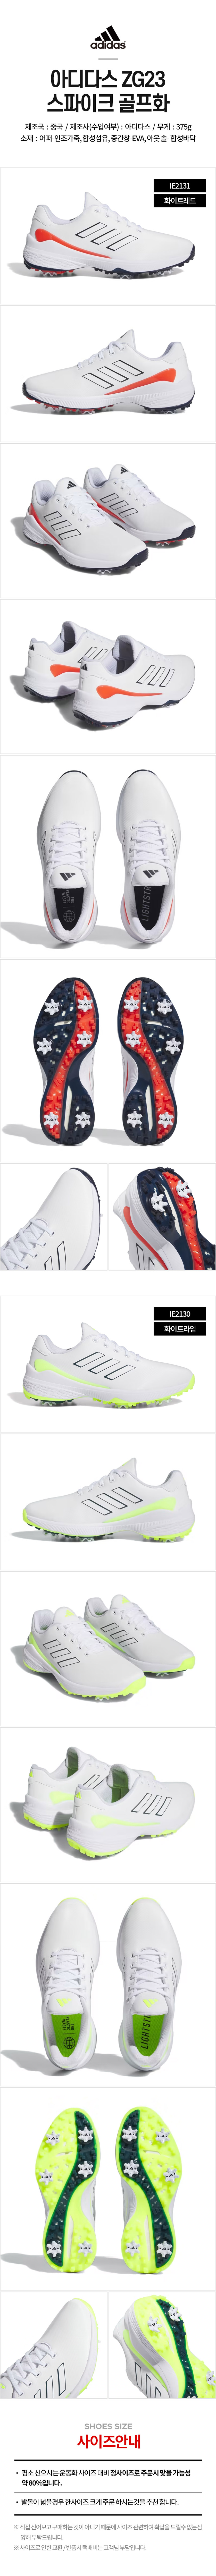 adidas_zg23_spike_golf_shoes_23.jpg